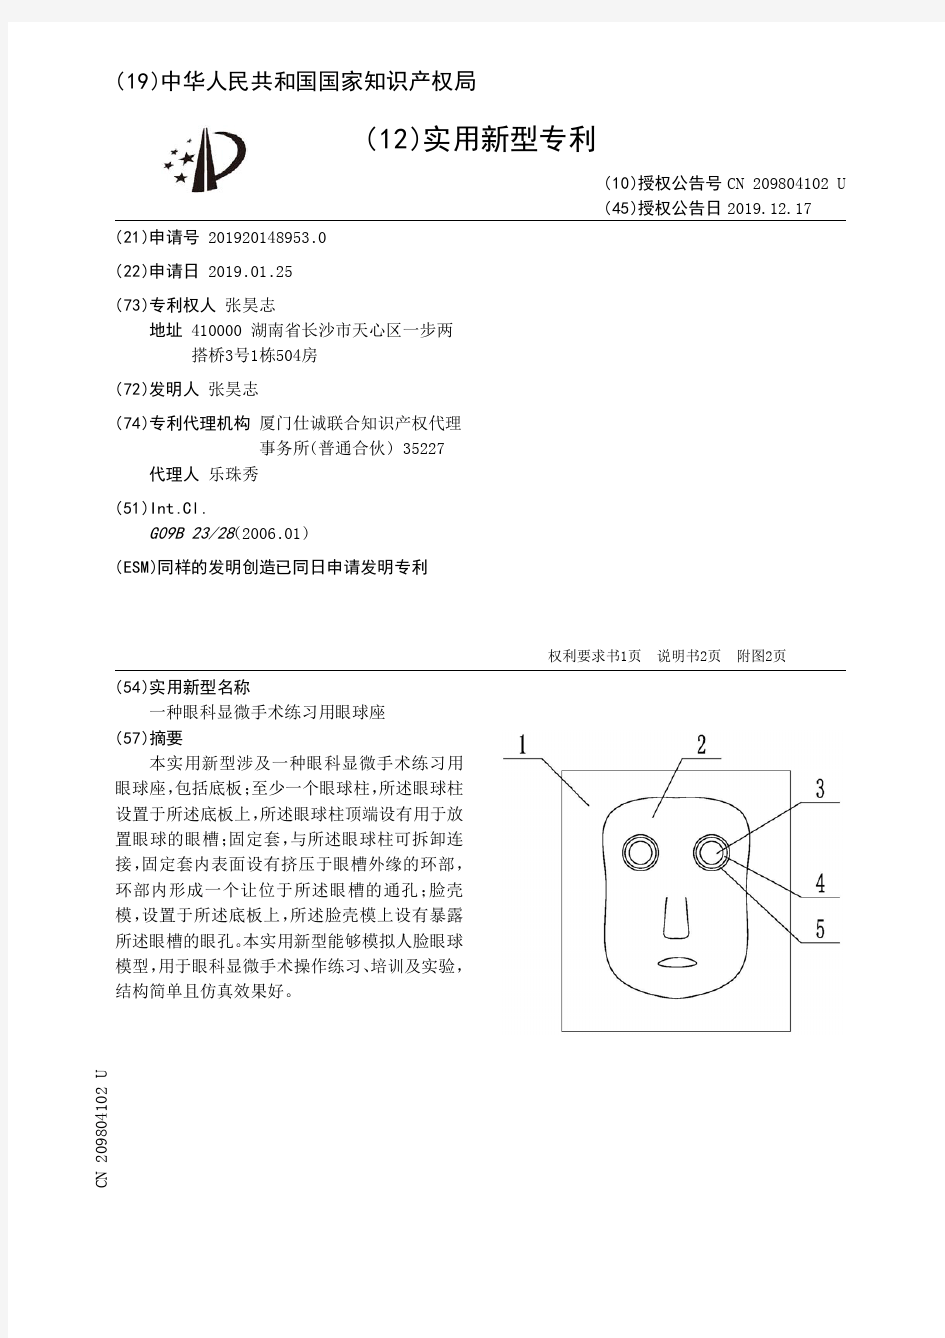 【CN209804102U】一种眼科显微手术练习用眼球座【专利】